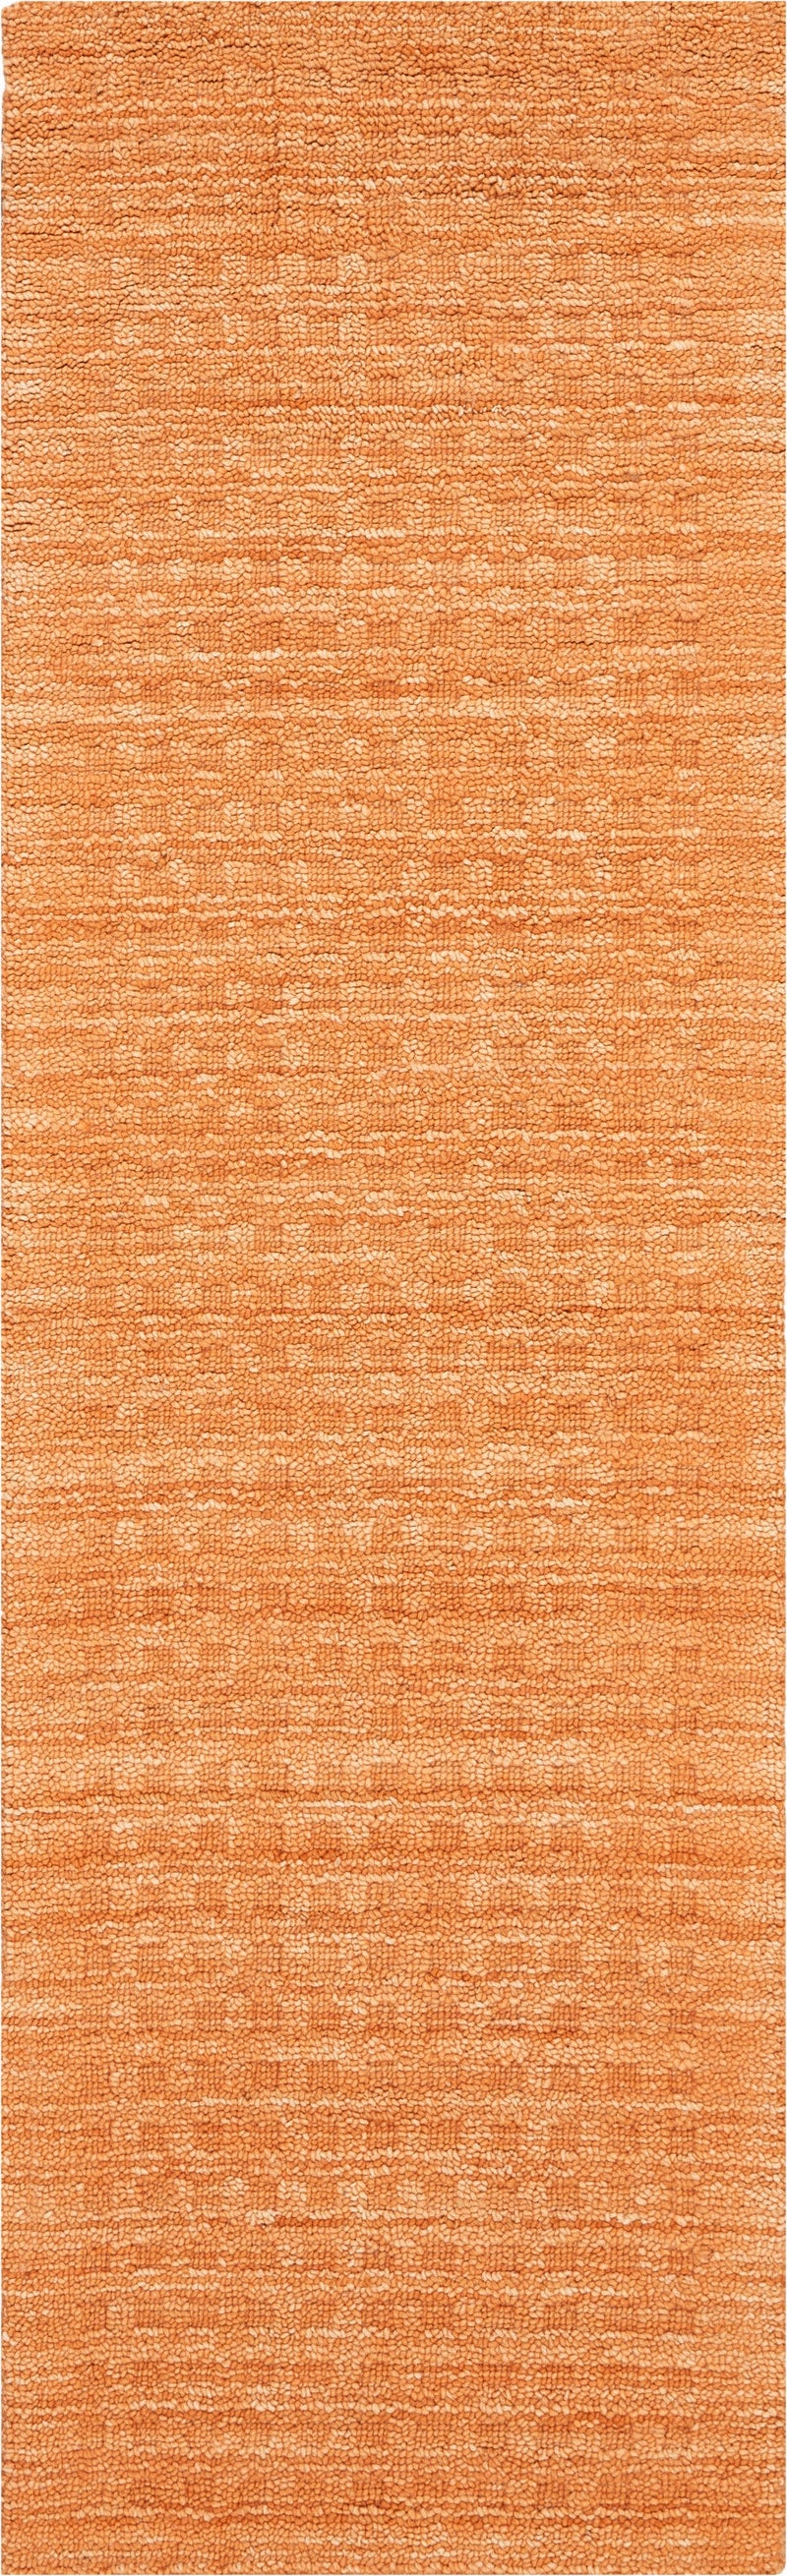 media image for marana handmade sunset rug by nourison 99446400604 redo 2 292